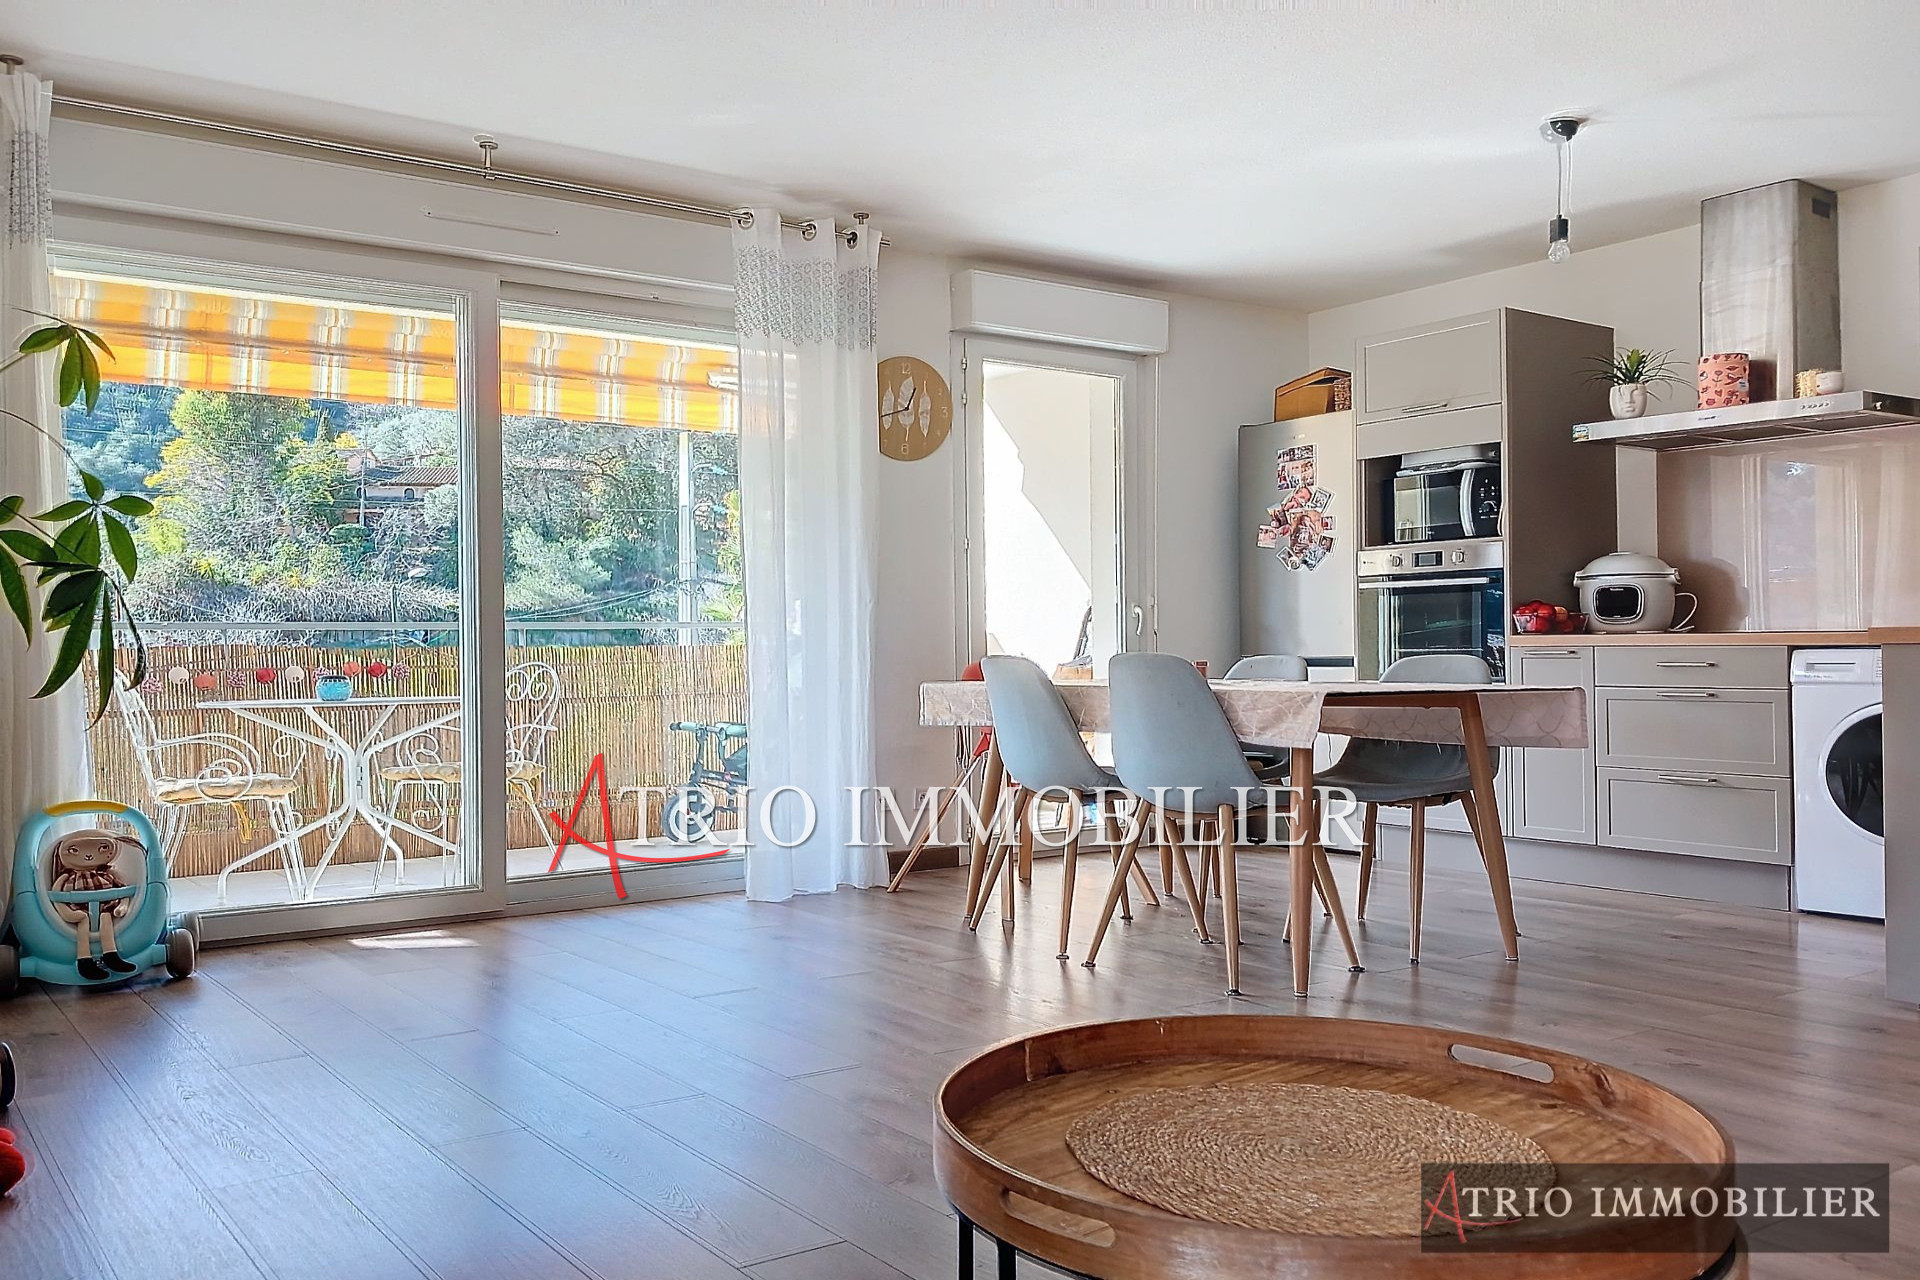 Vente Appartement 61m² à Cagnes-sur-Mer (06800) - Atrio Immobilier